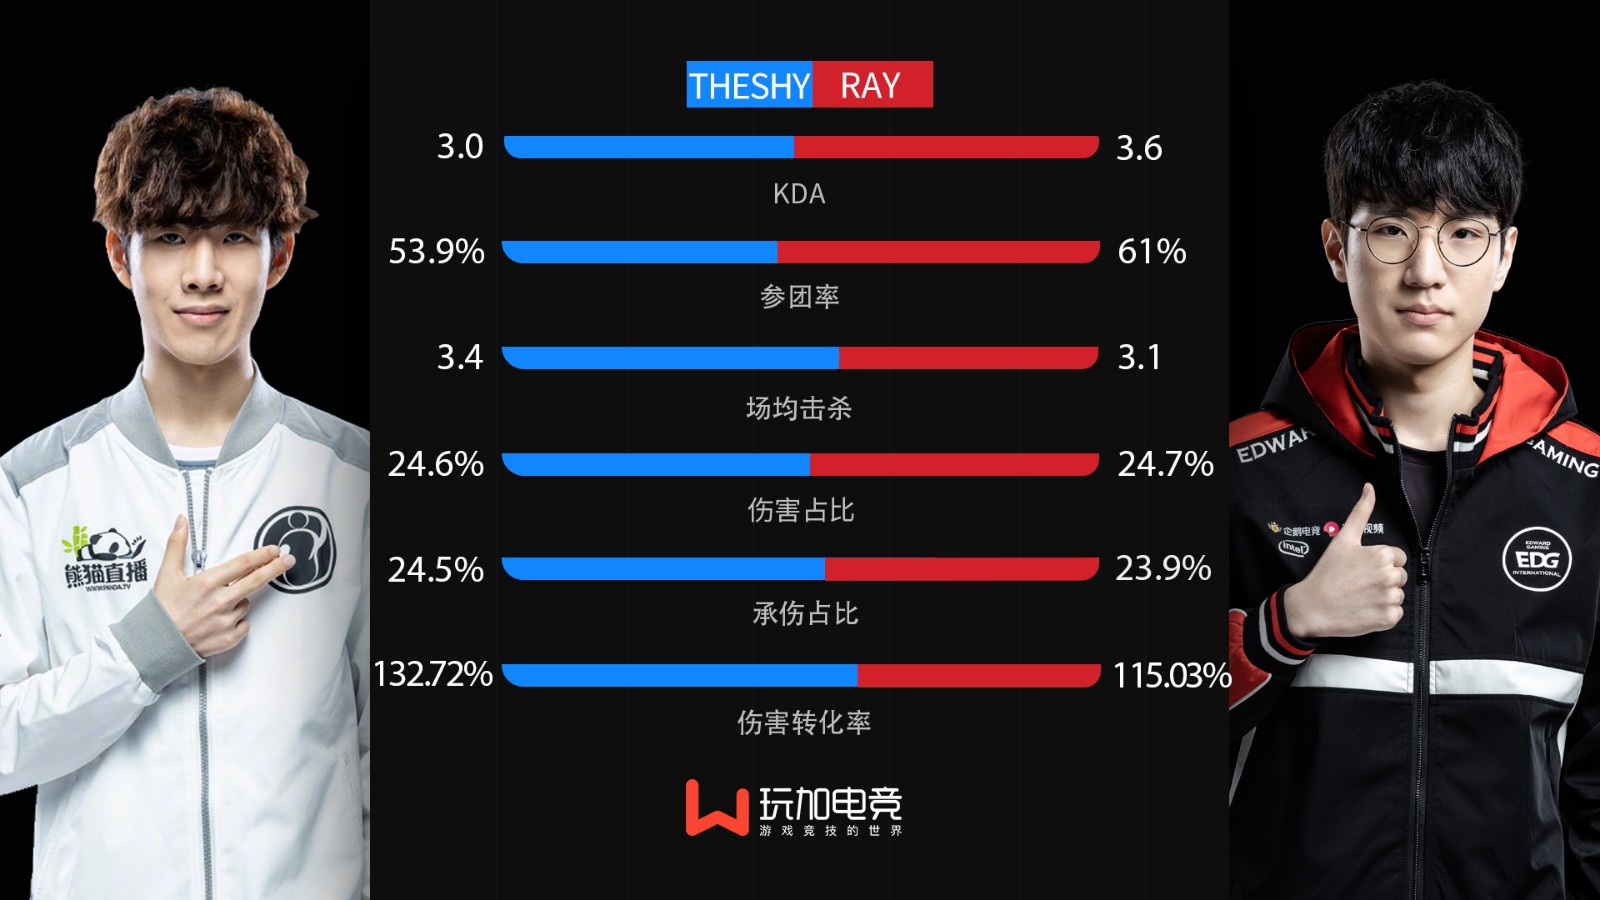 [选手数据对比] TheShy vs Ray 备受期待的上路对决